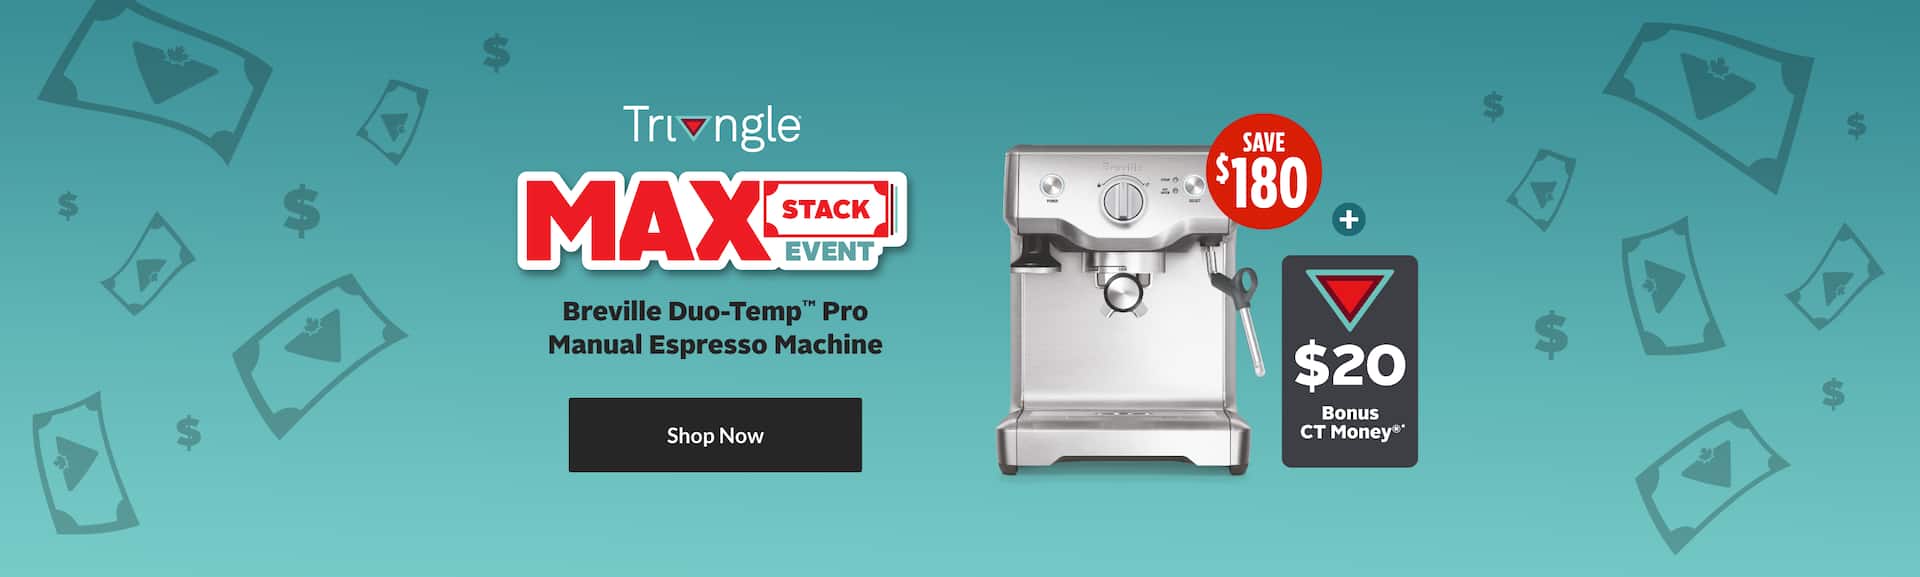 Breville Duo-Temp Pro Manual Espresso Machine 